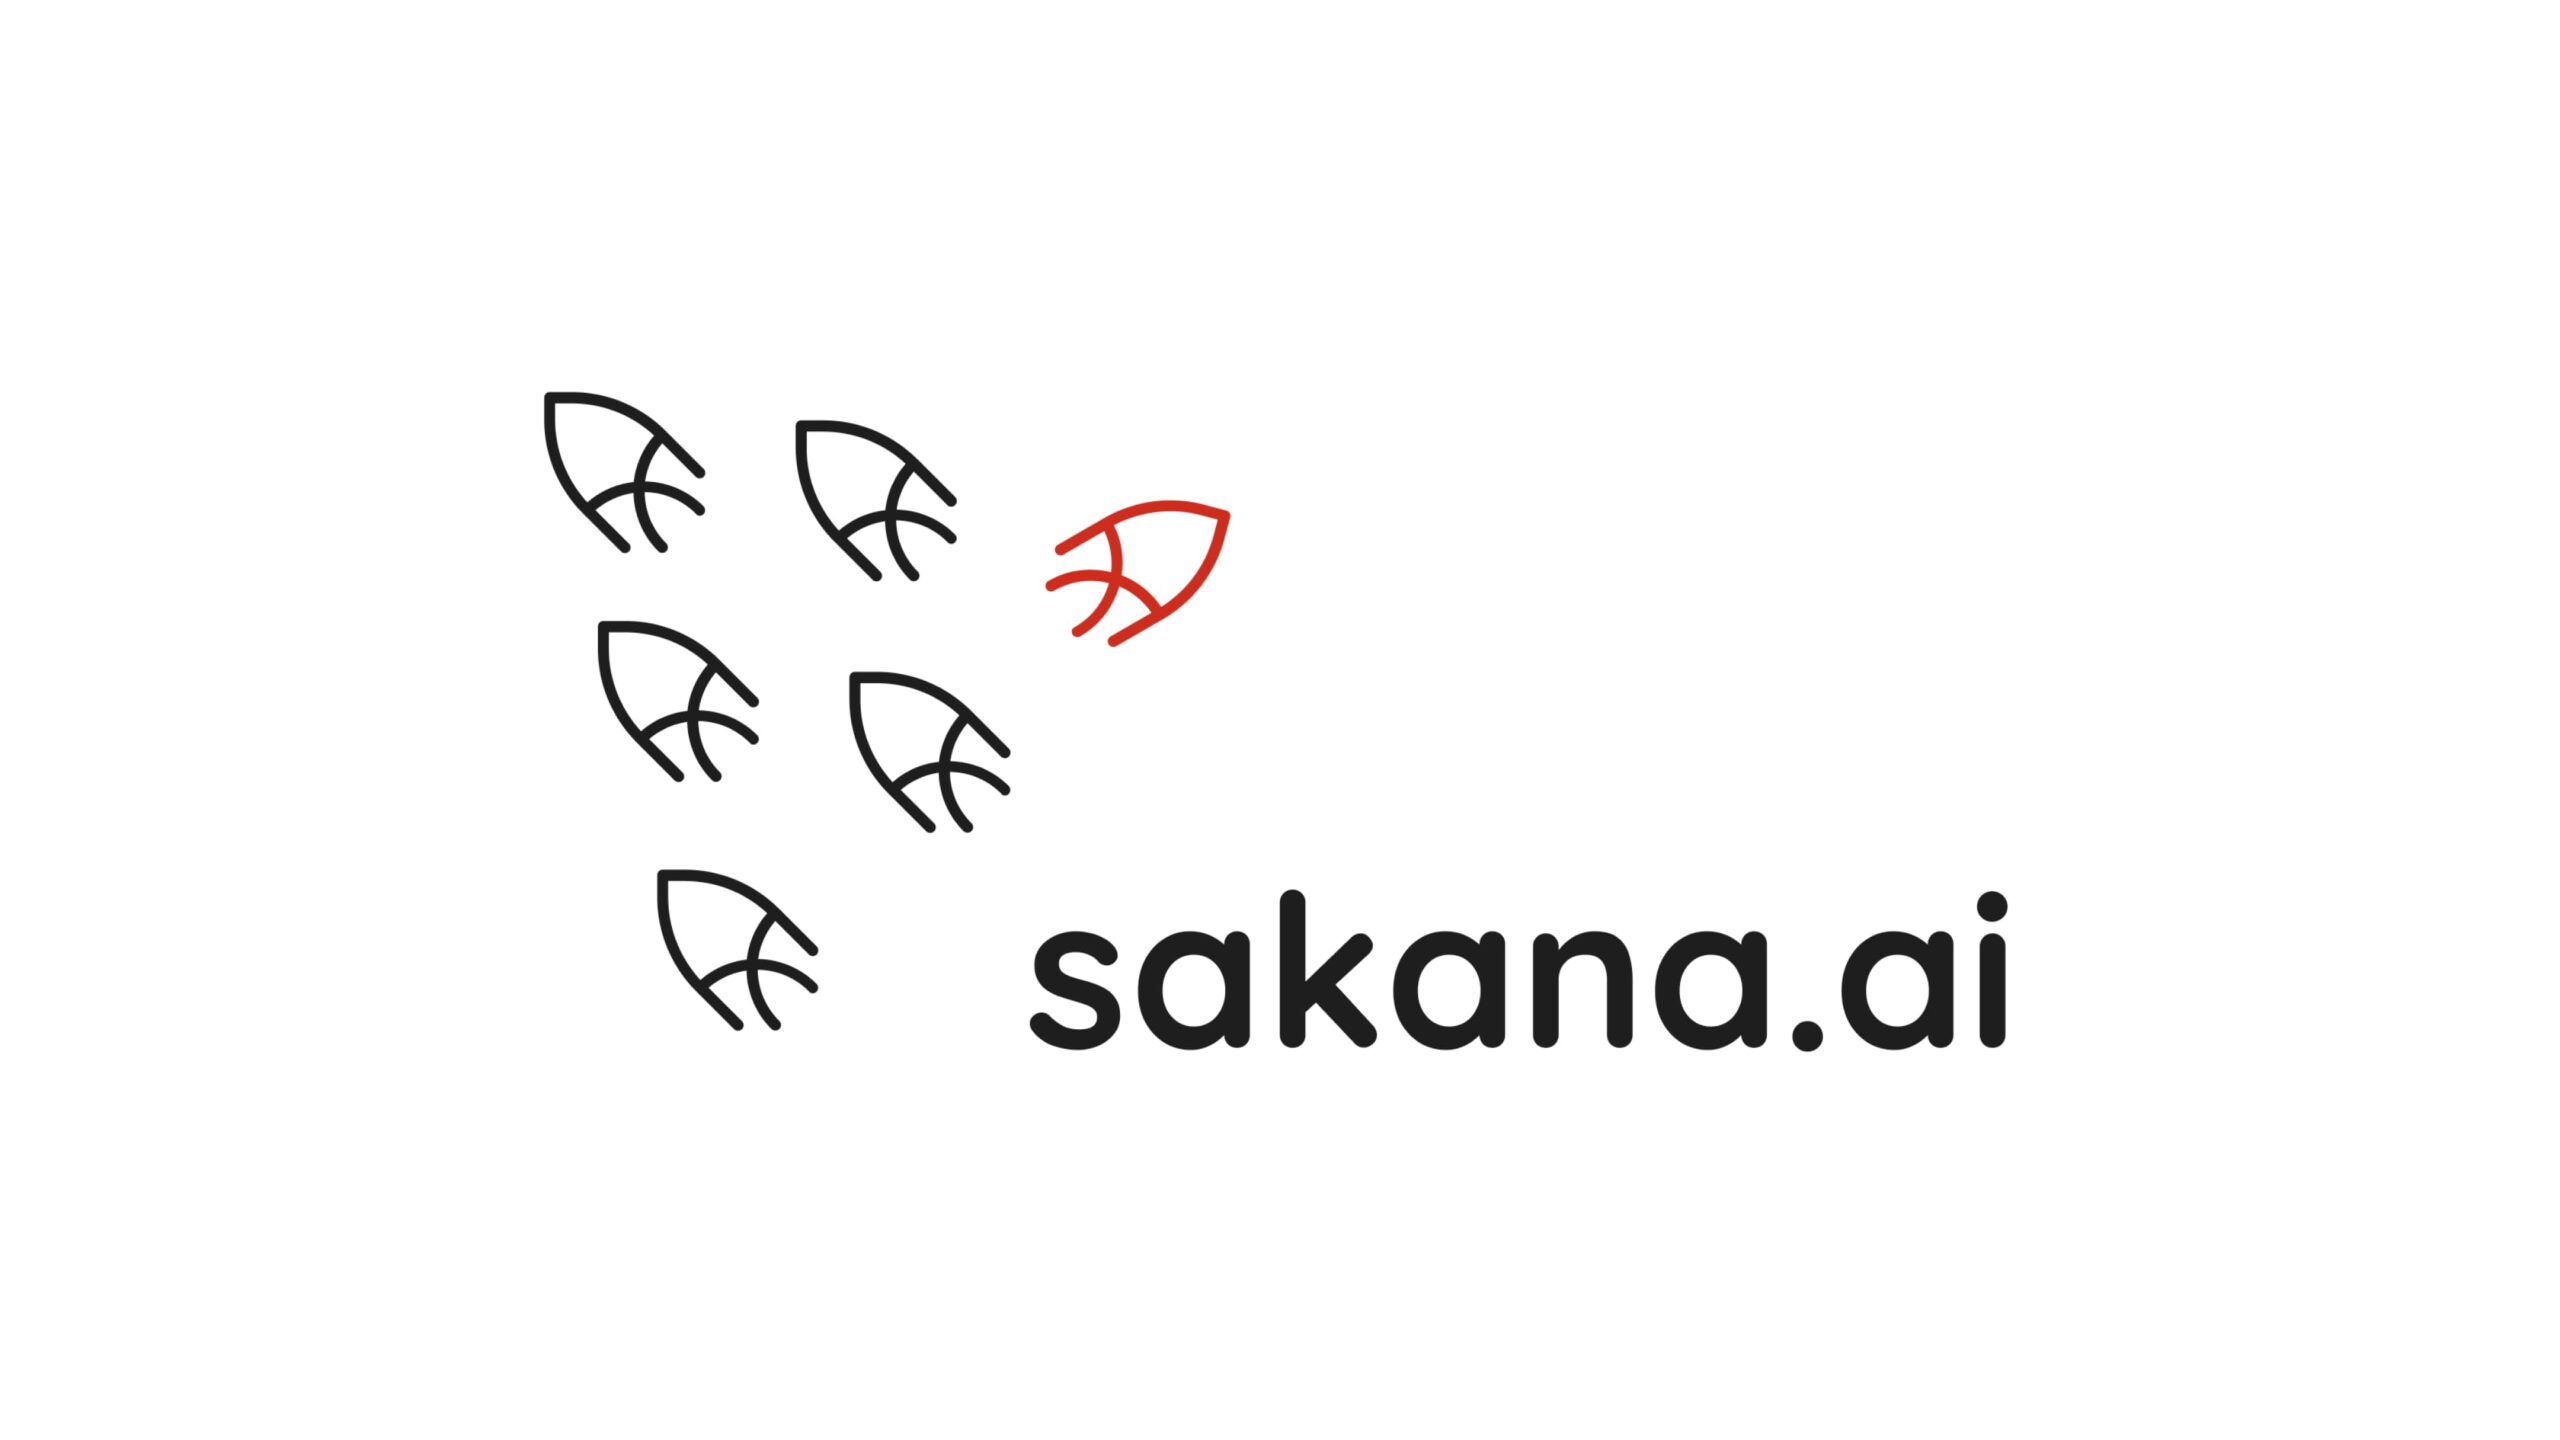 Sakana AI株式会社がシードラウンドにて3,000万ドルの資金調達を実施